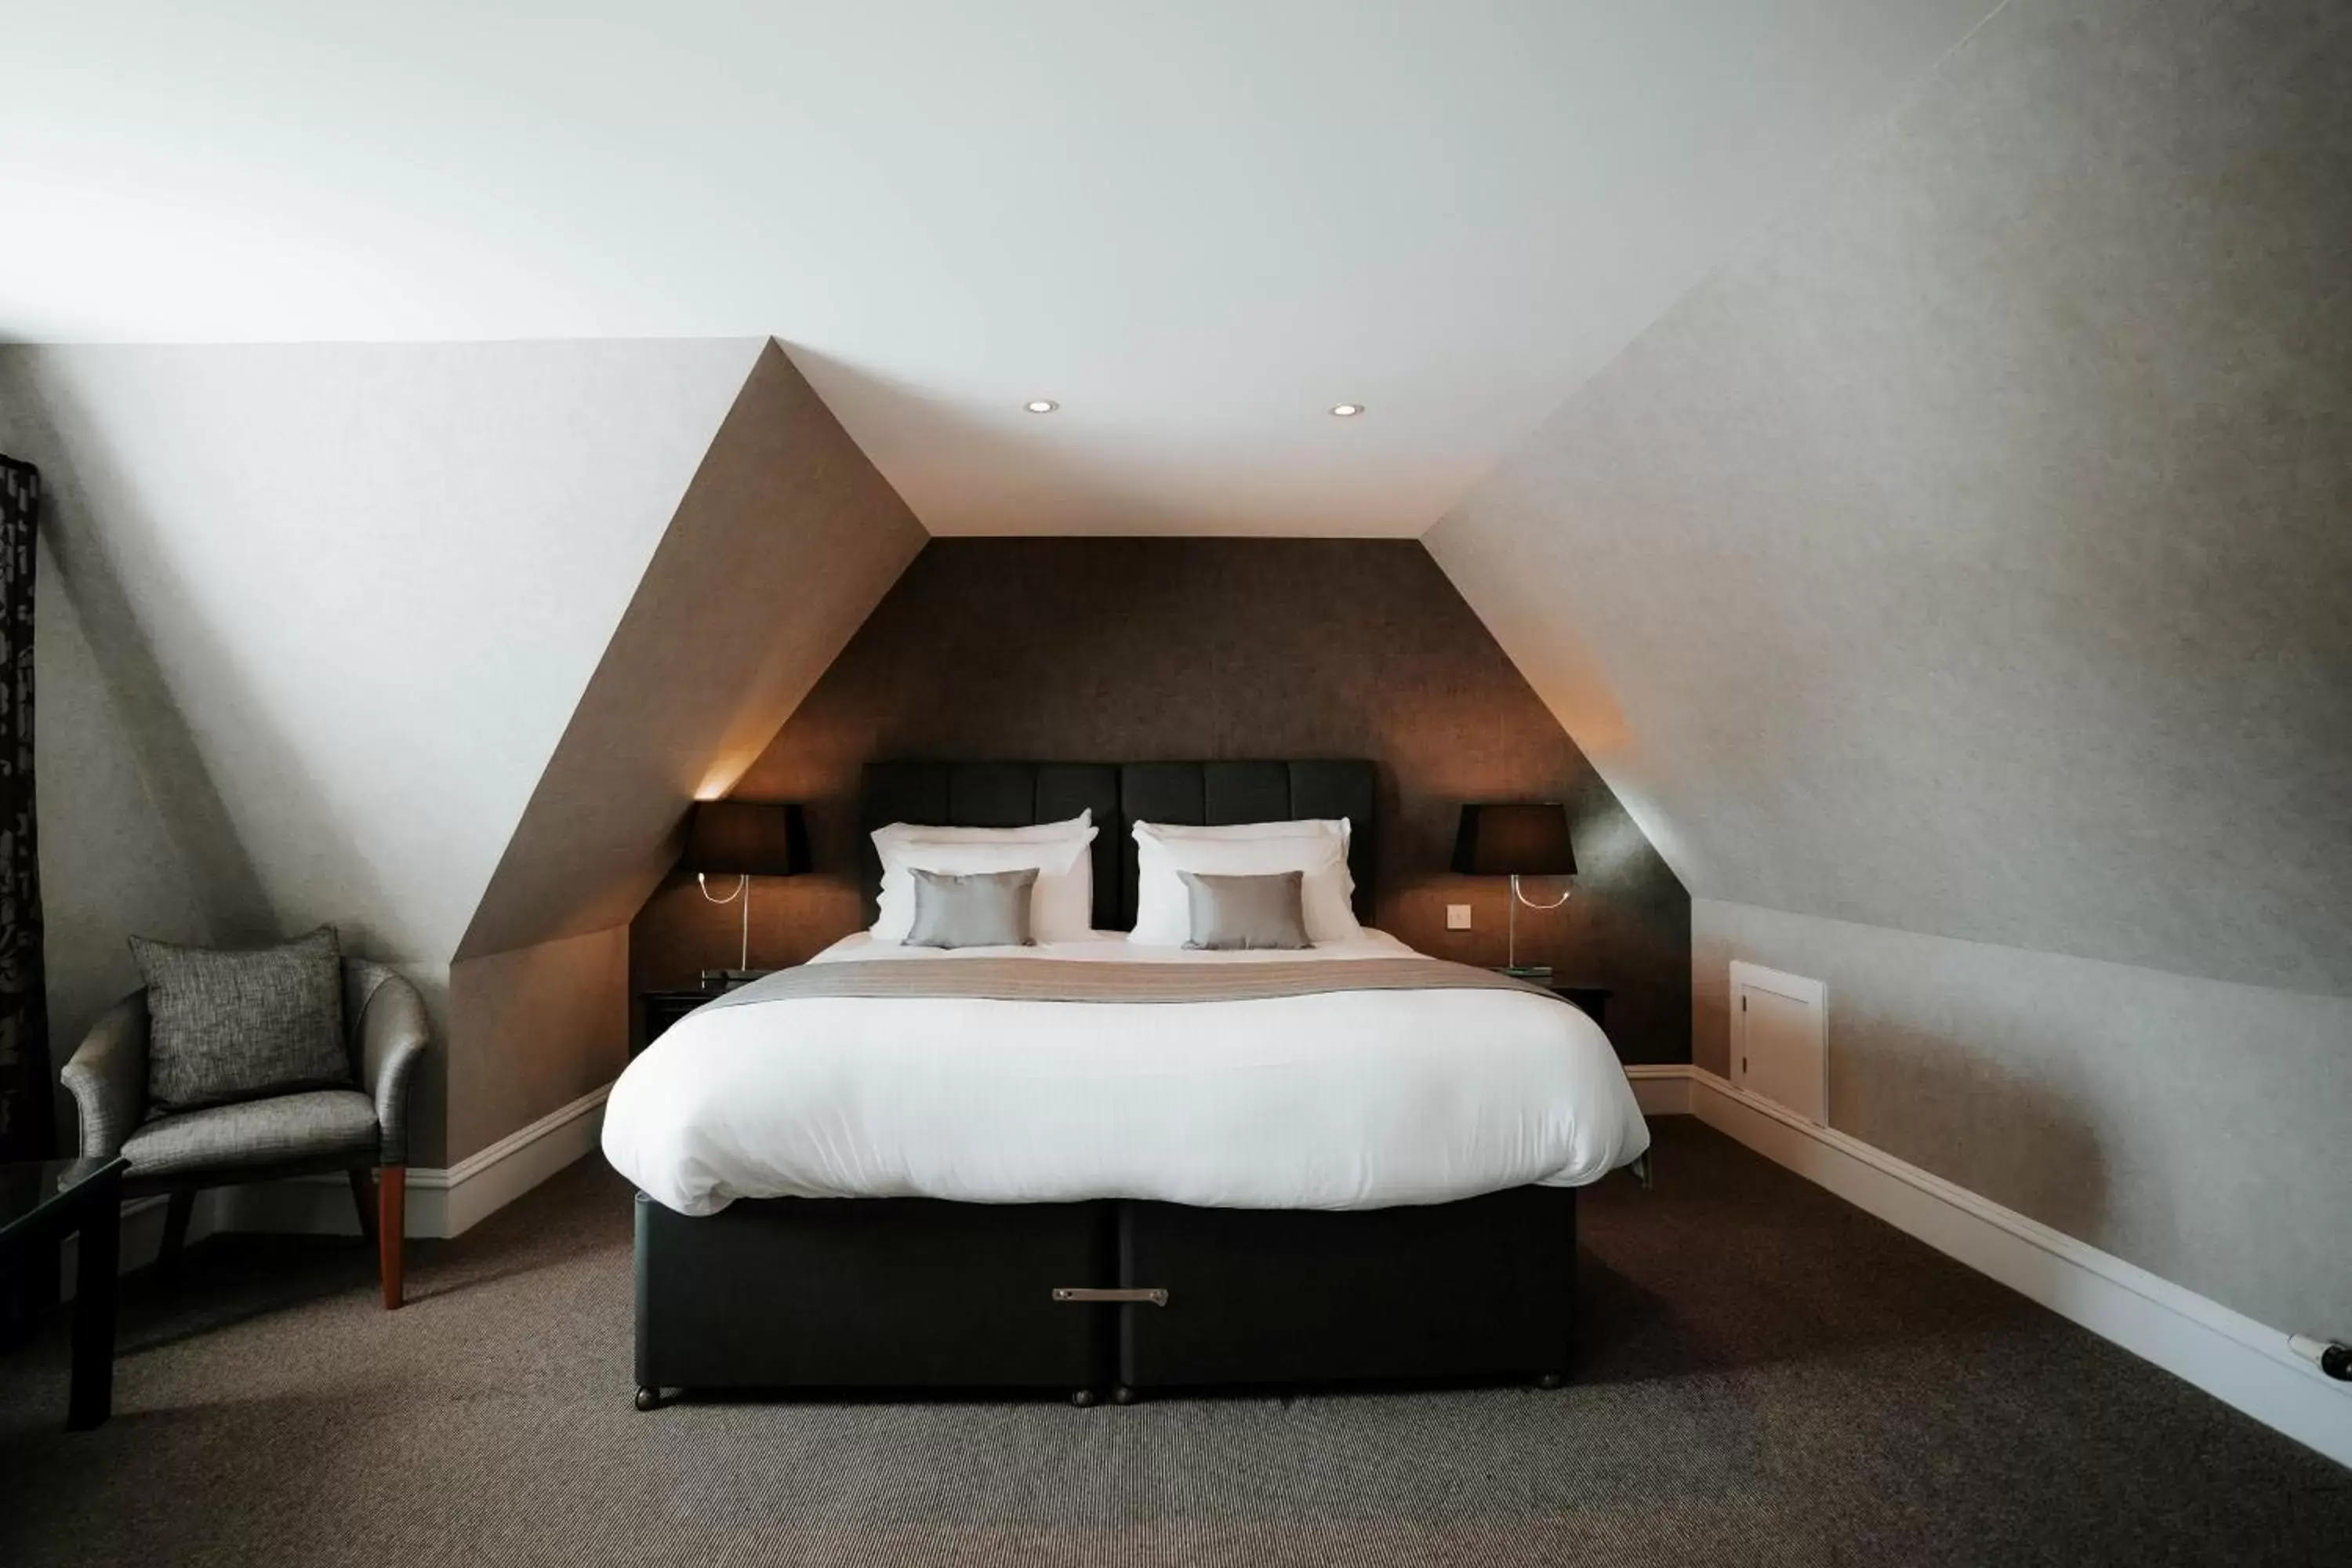 Bed in New Inn Hotel